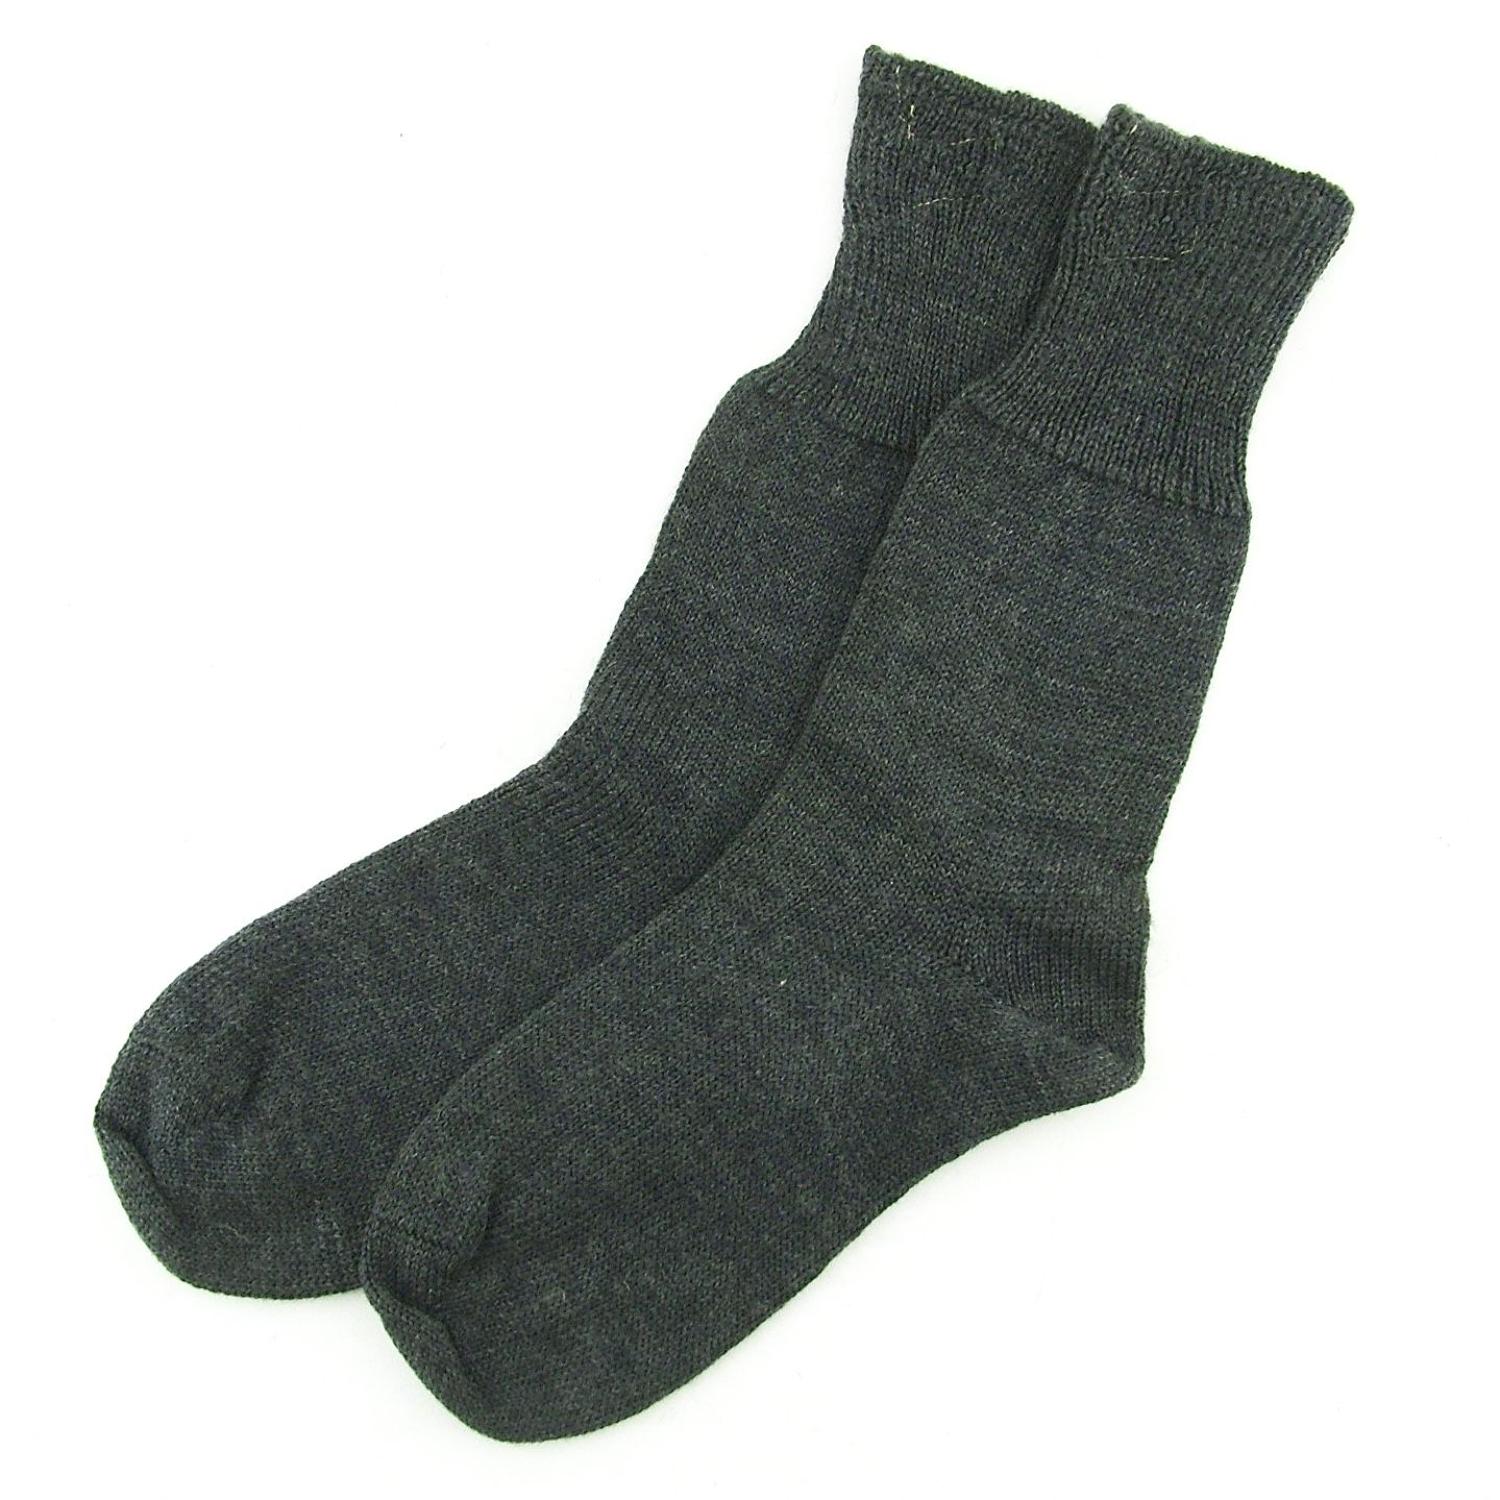 RAF socks, 1945 dated